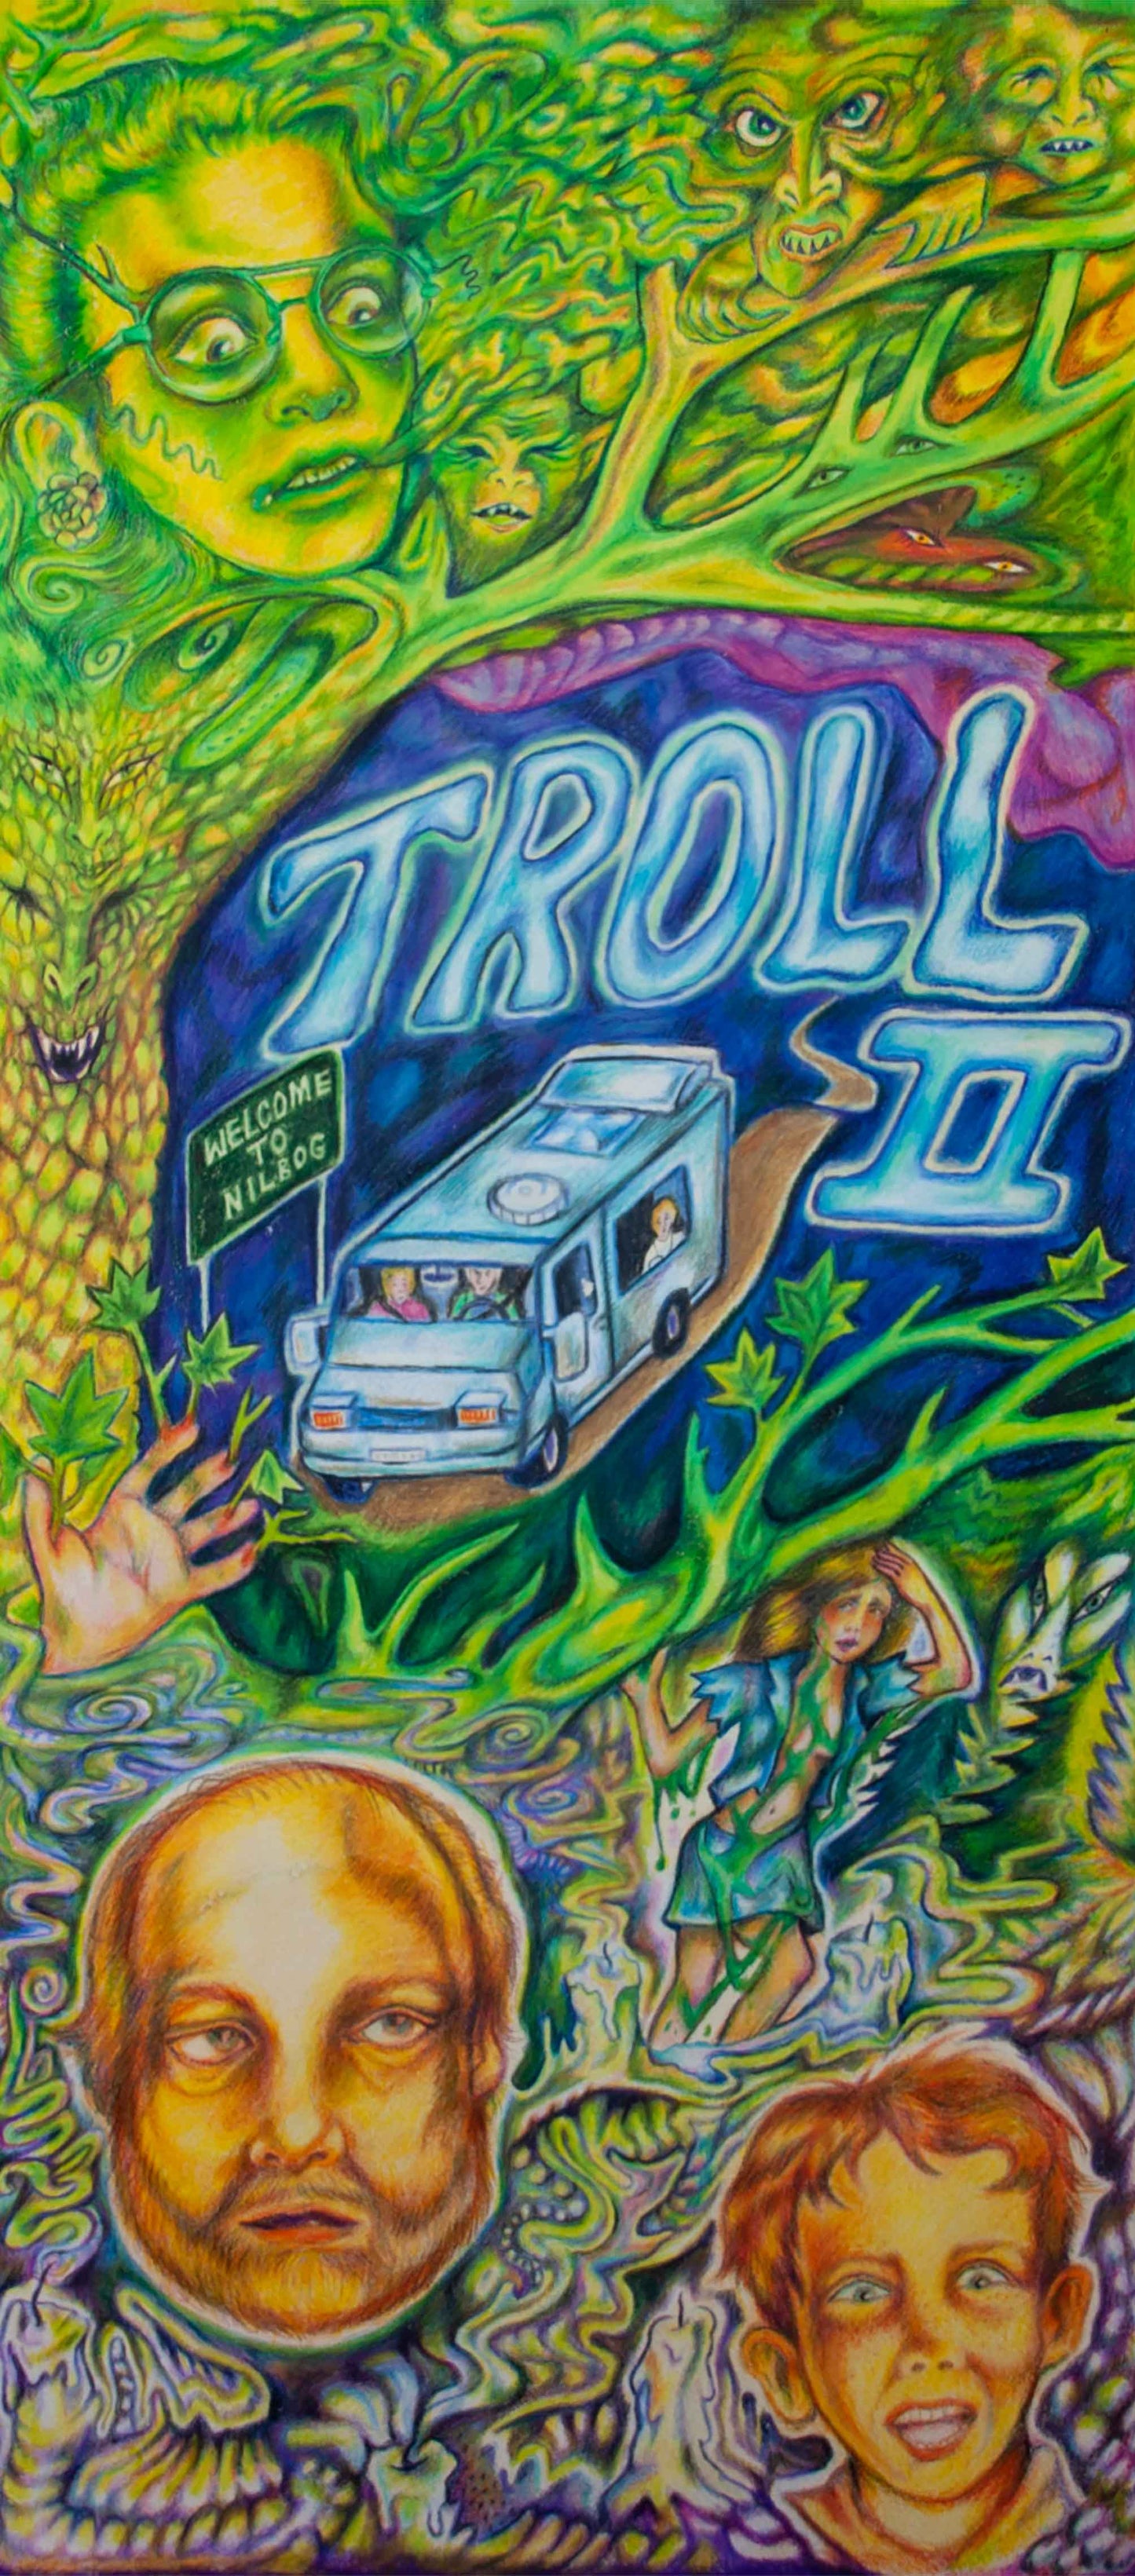 Daybill - 'Troll 2' - Olivia Chapman